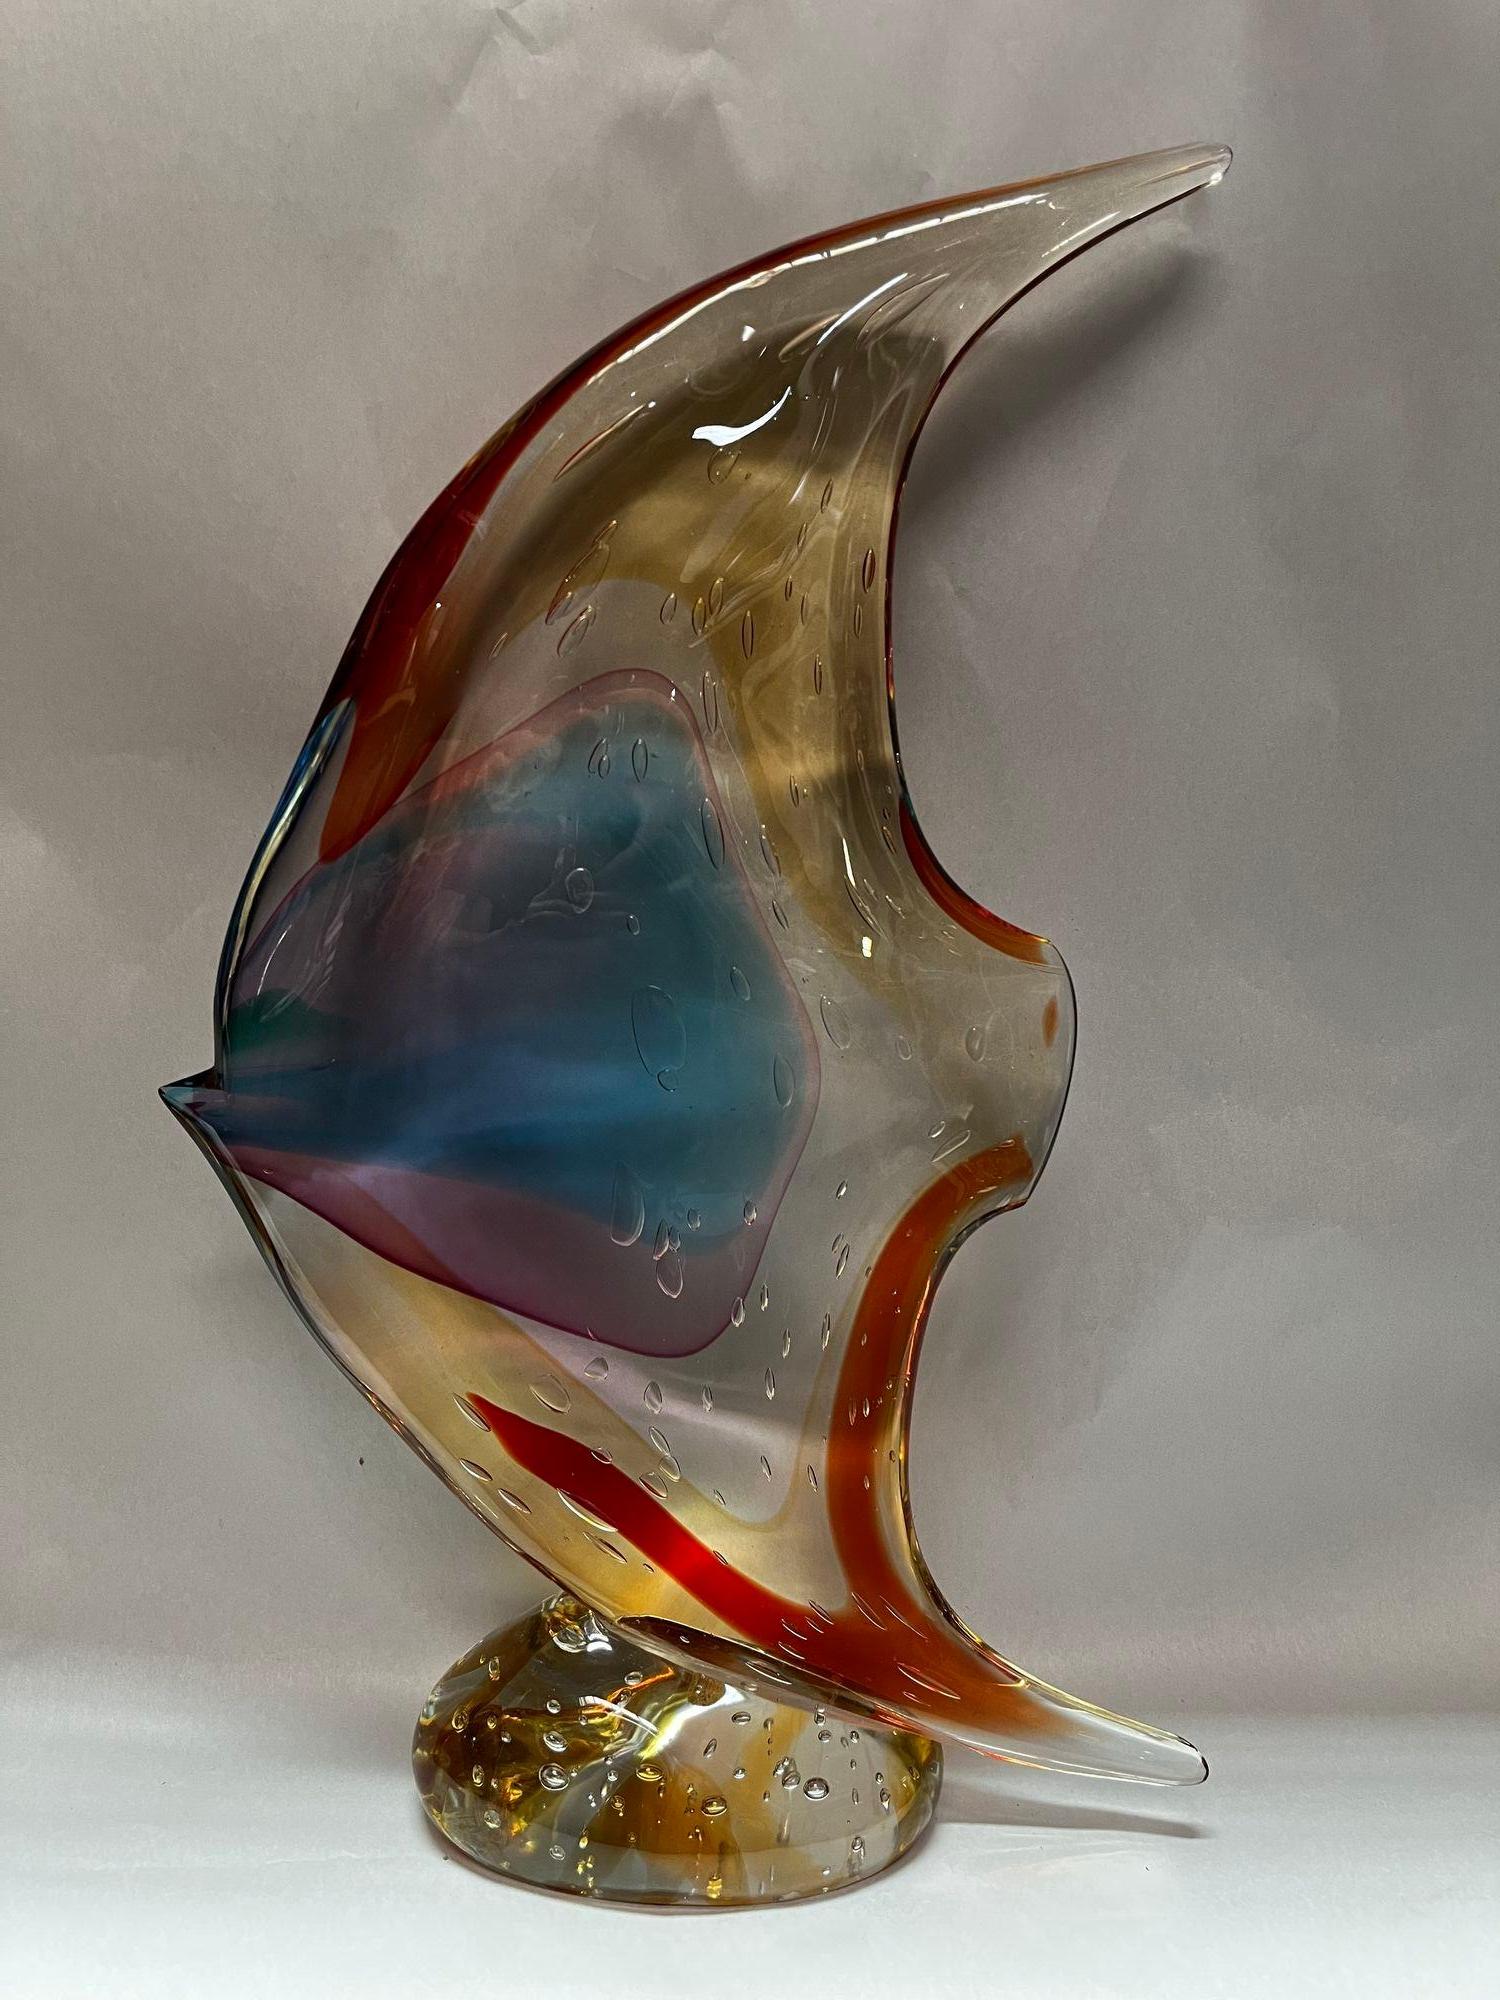 Fischskulptur aus Murano-Glas von Sergio Costantini für Vetro Artistico Murano mit braunen, roten, bernsteinfarbenen, gelben und blauen Farbtönen.
Hergestellt in Italien, 20. Jahrhundert (mit Aufkleber und Signatur)
Abmessungen: 20 